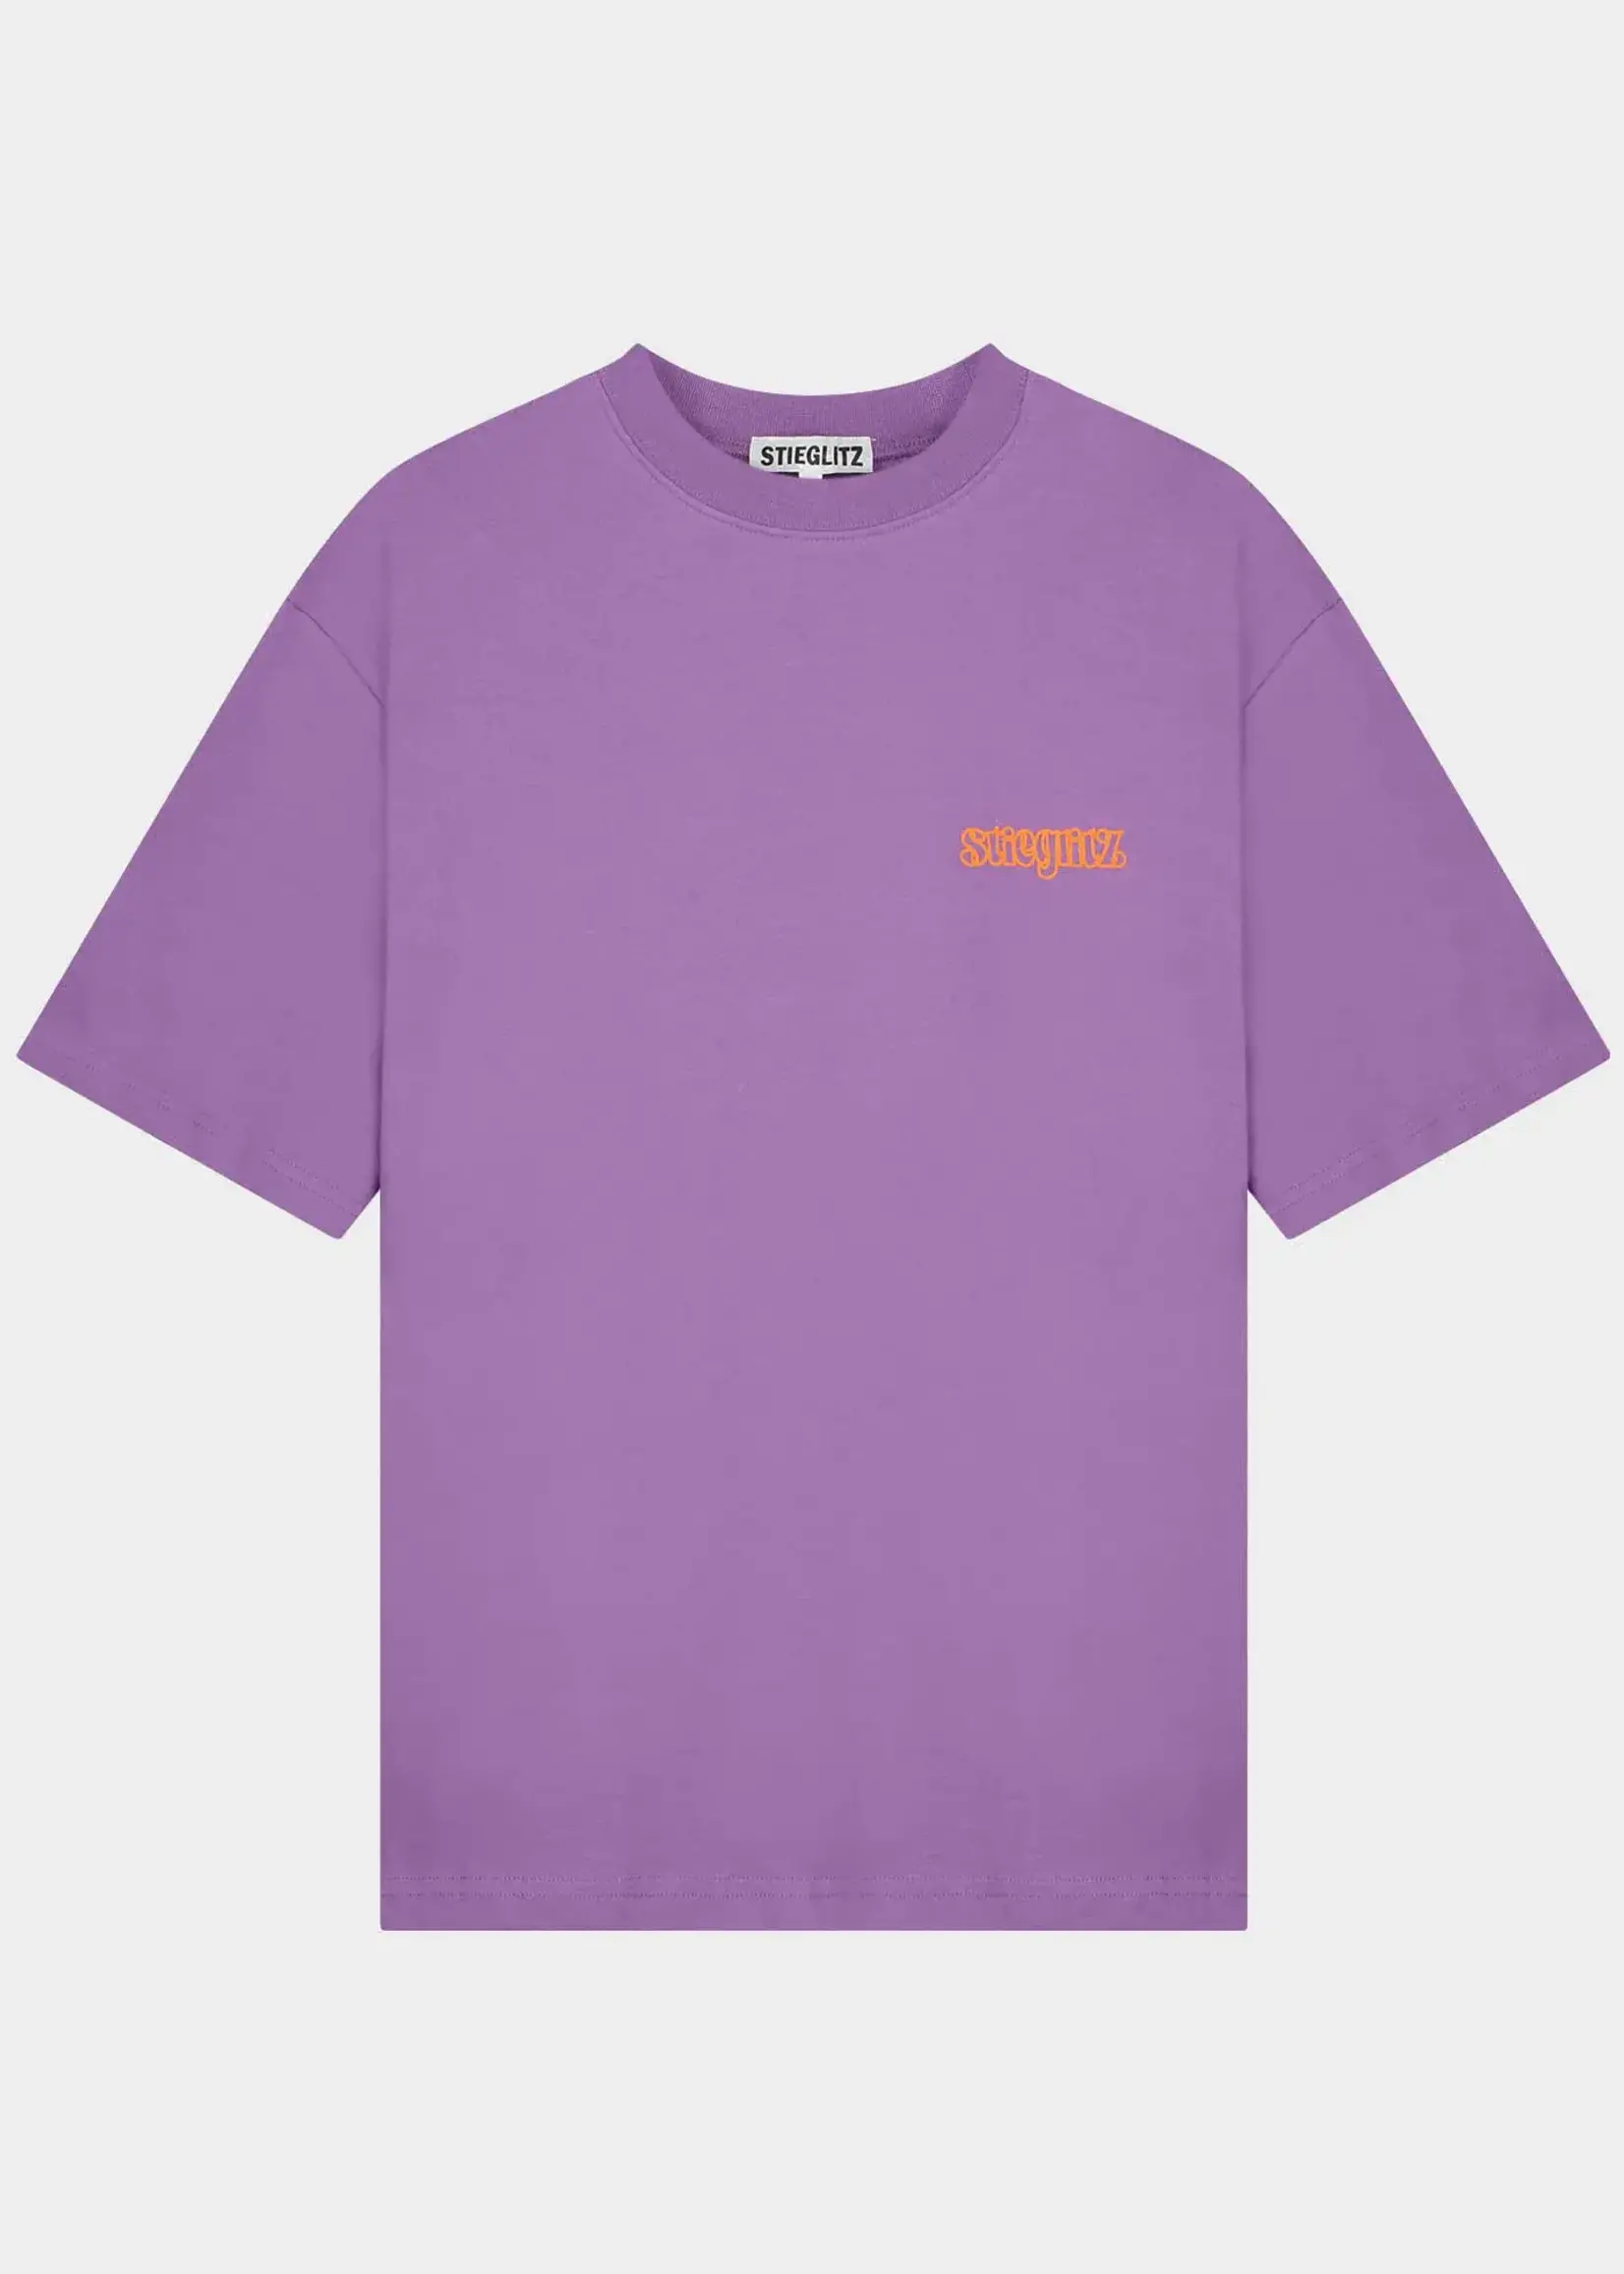 Stieglitz Rafael T-shirt - Purple